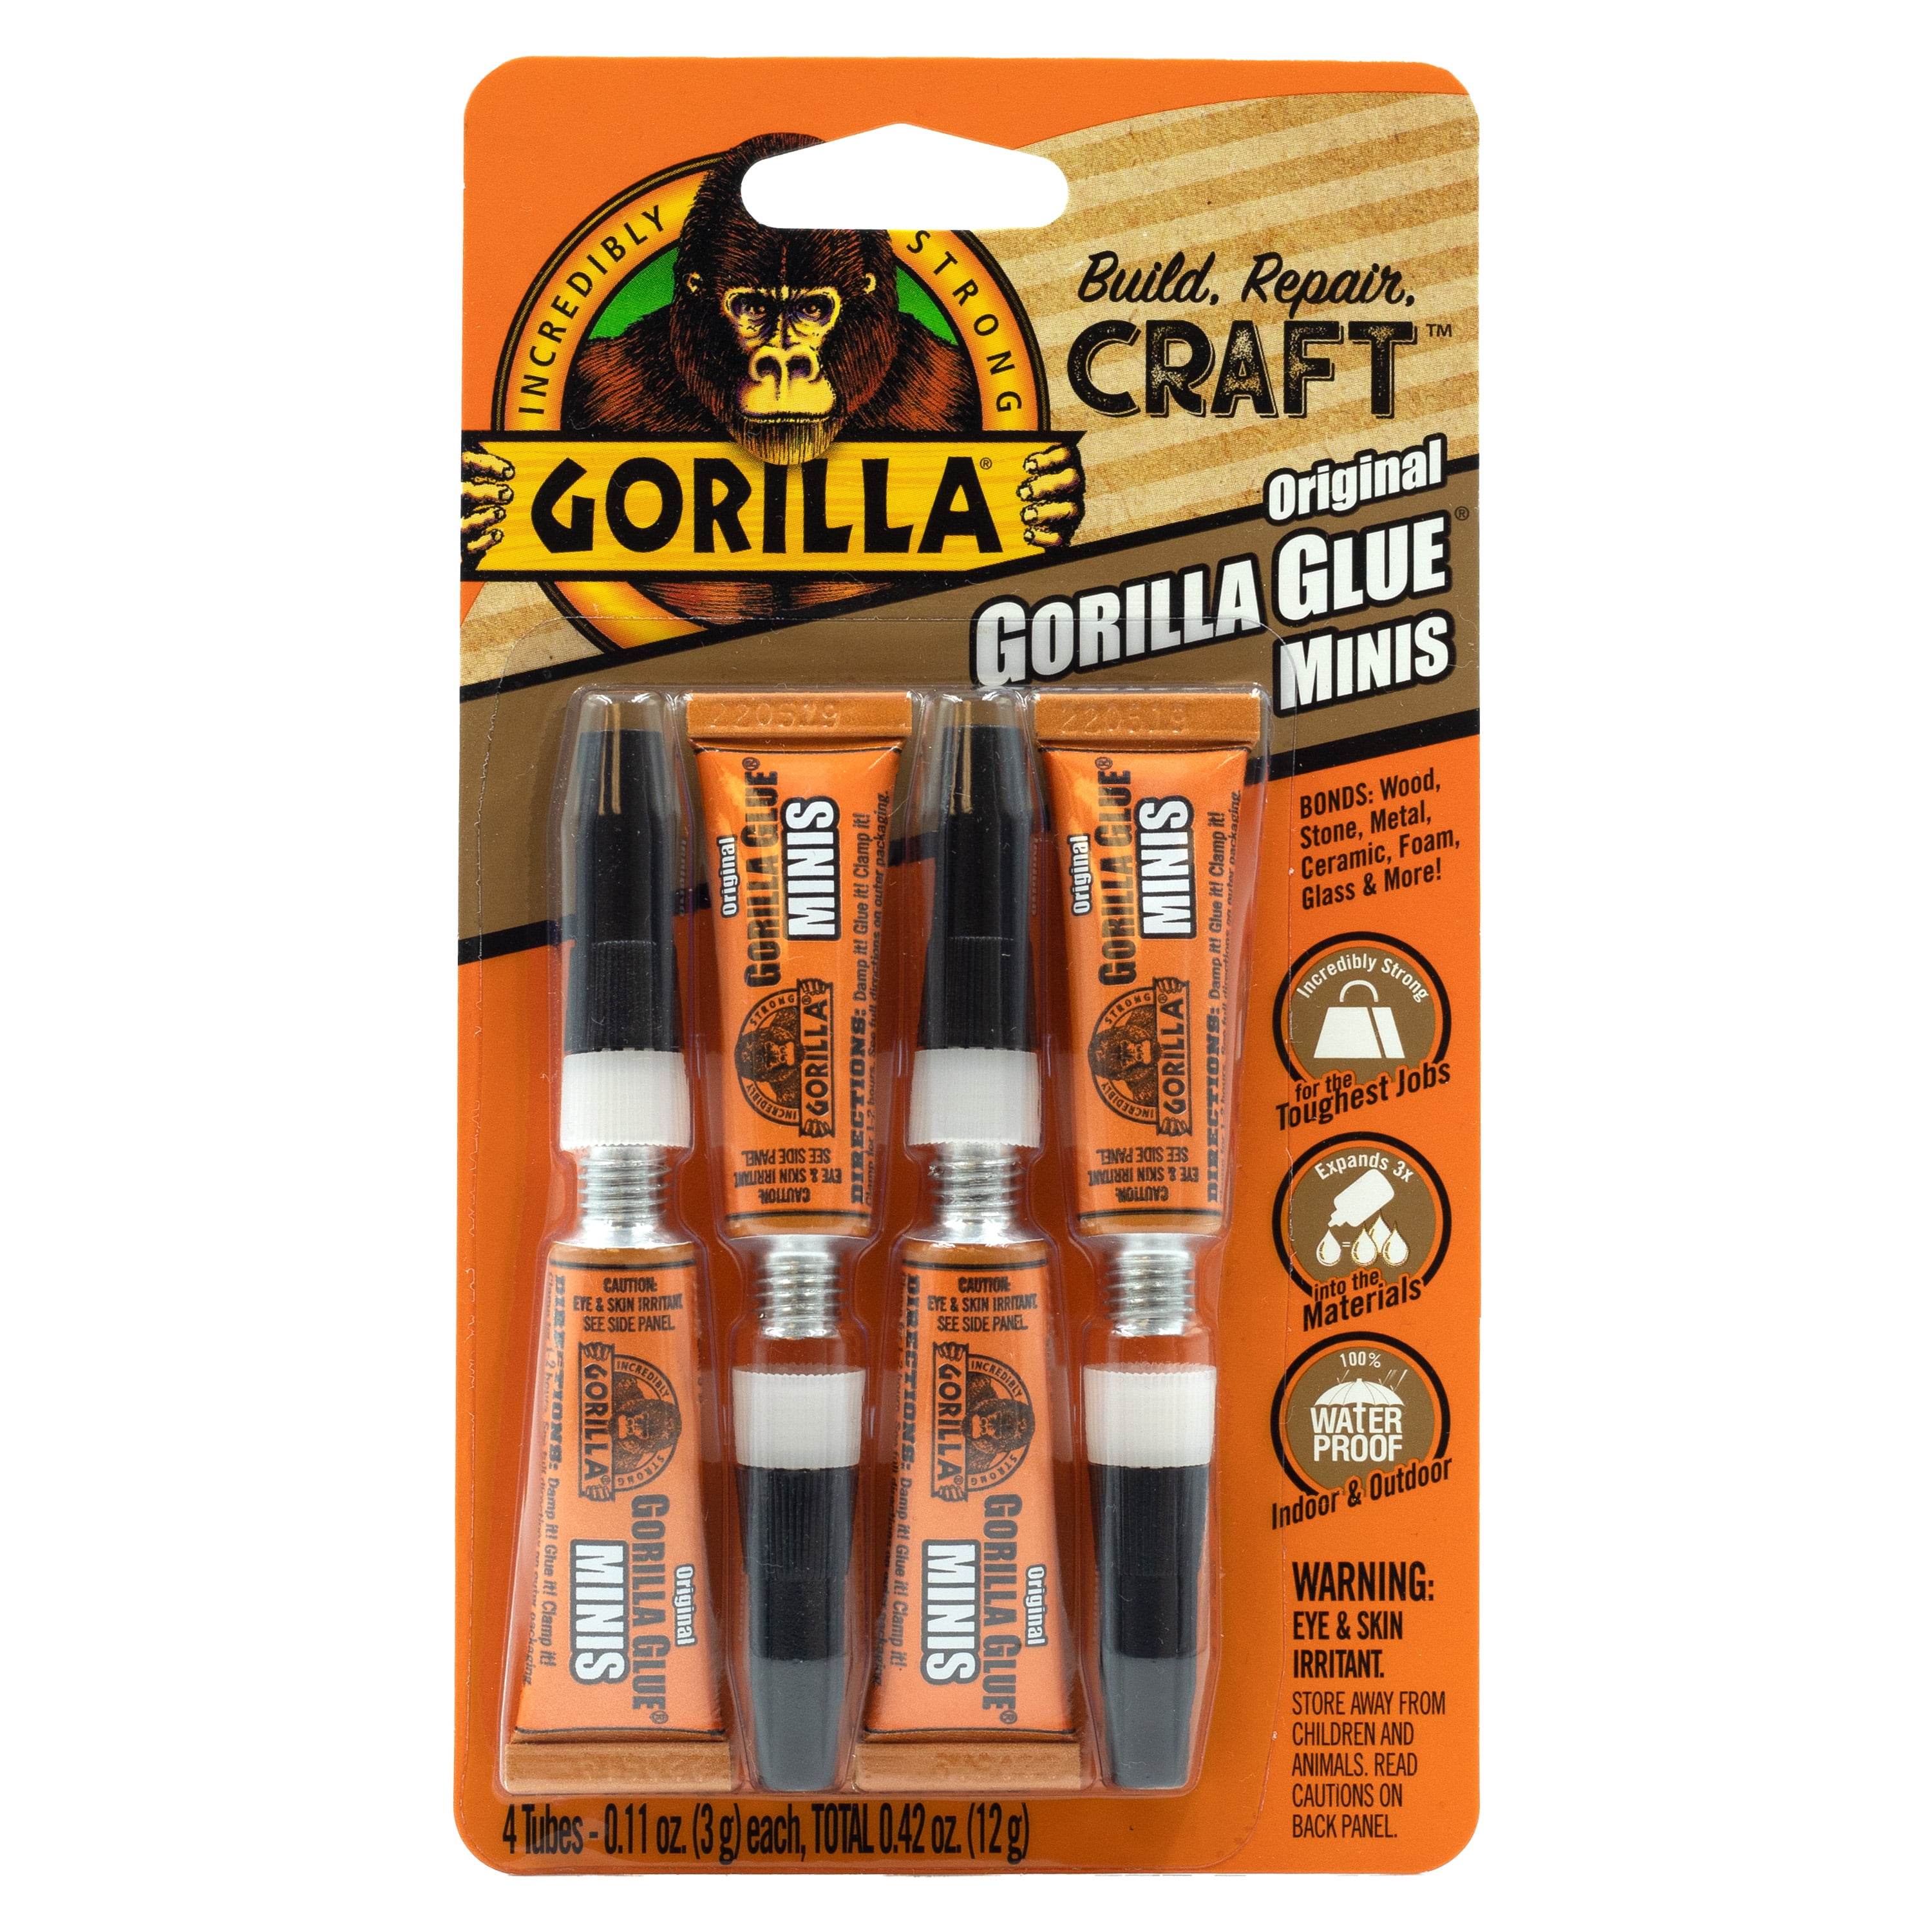 Gorilla Super Glue .5 oz (4 Pack)